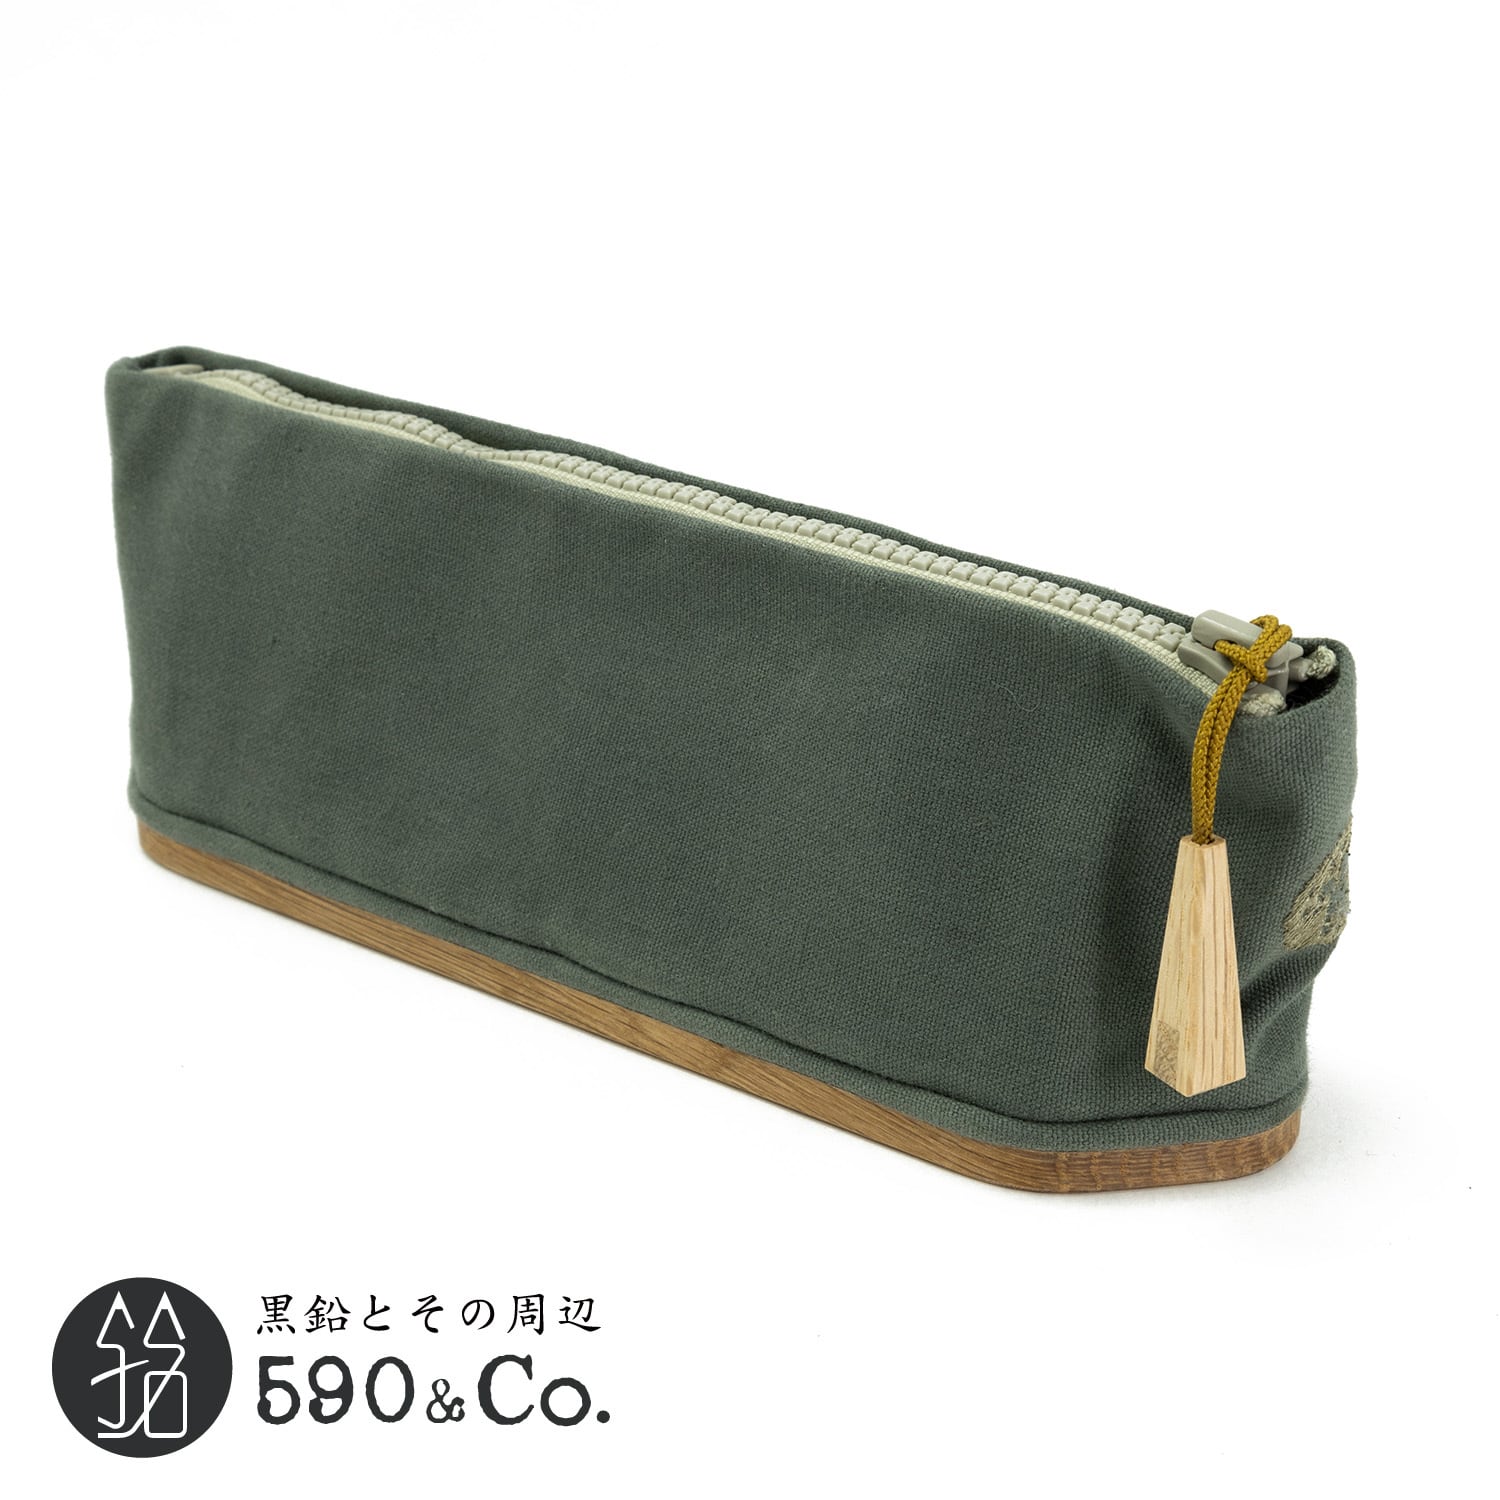 キナリ木工所】pencase 79 canvas × wood S (オリーブドラブ) | 590&Co.